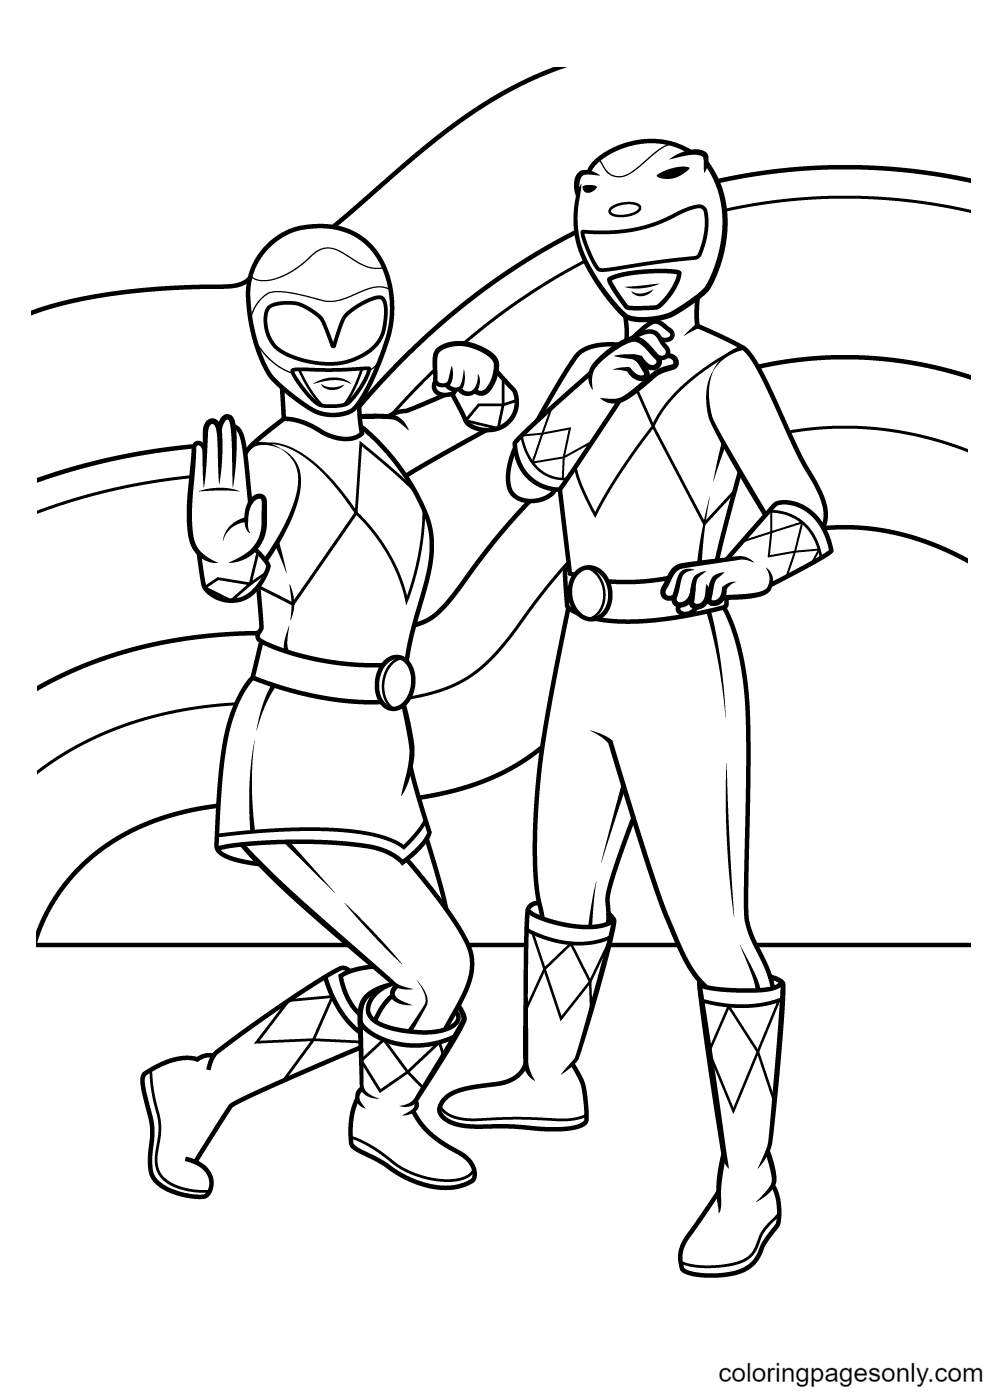 Ranger Rosa e Ranger Amarelo de Power Rangers